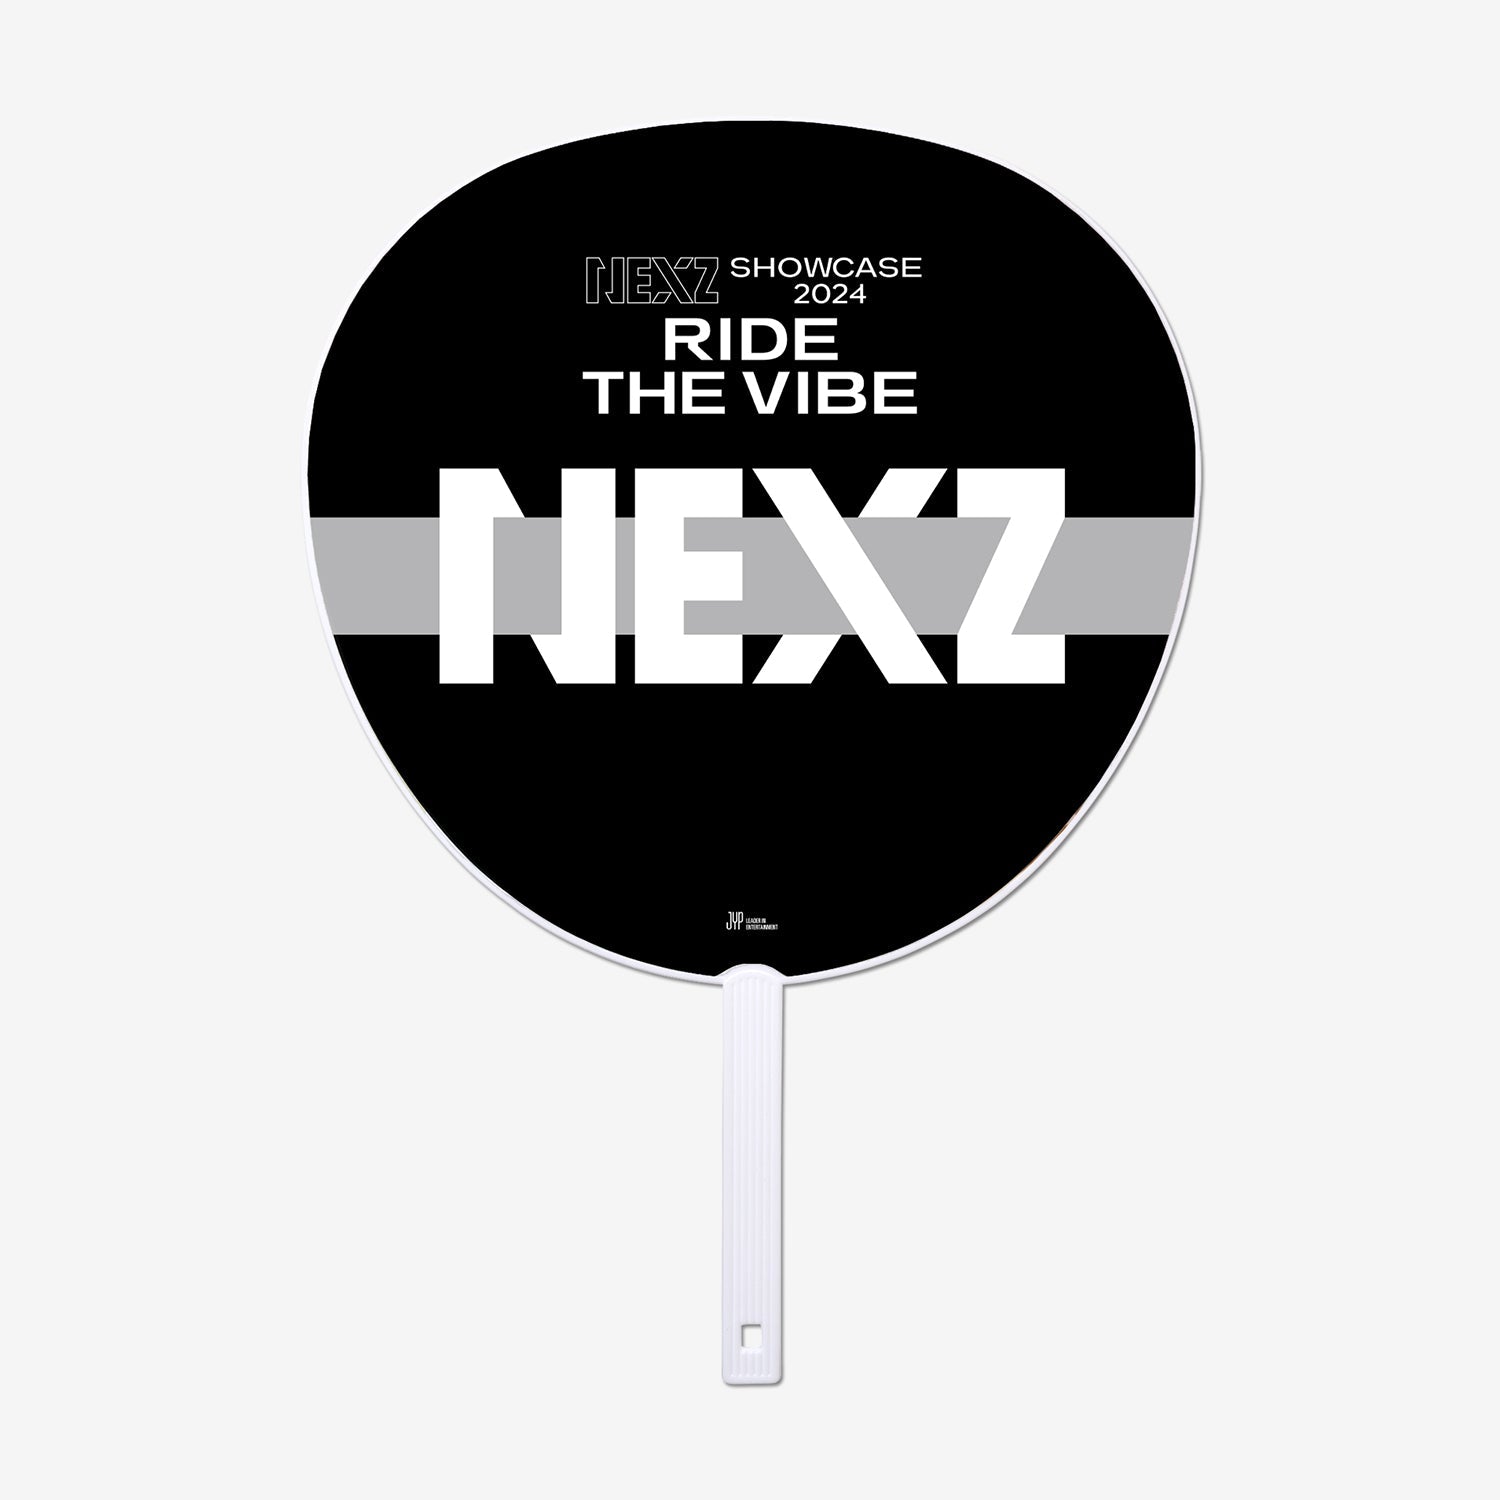 IMAGE PICKET - SEITA / NEXZ『SHOWCASE 2024 “Ride the Vibe”』